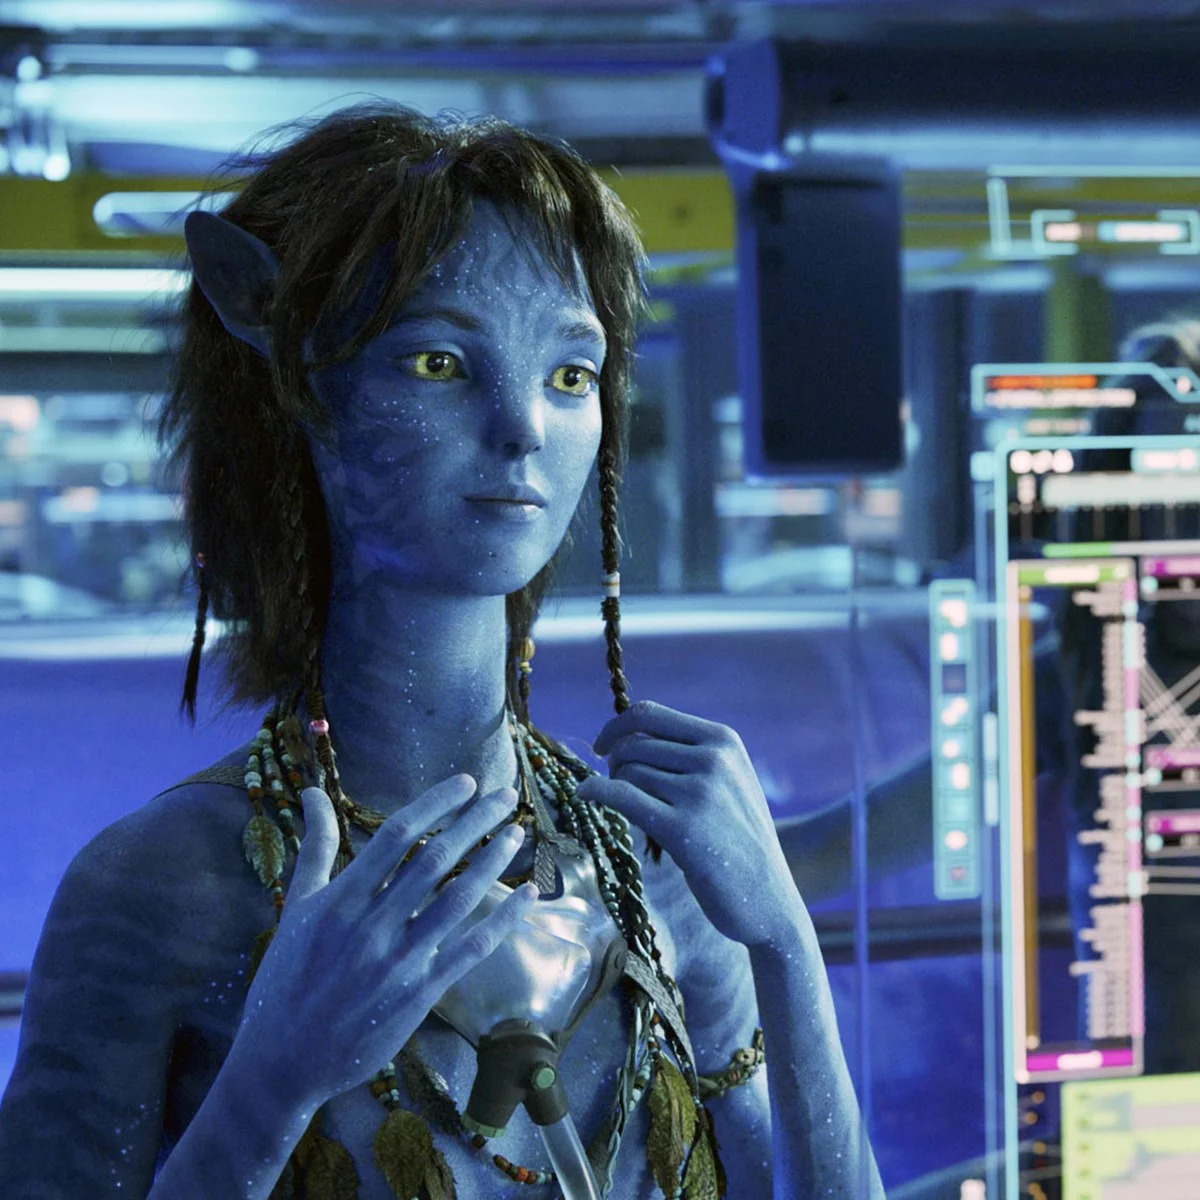 Khán giả đang mong chờ bộ phim Avatar 2 với nhân vật mới mang tên Kiri sắp ra mắt trong năm